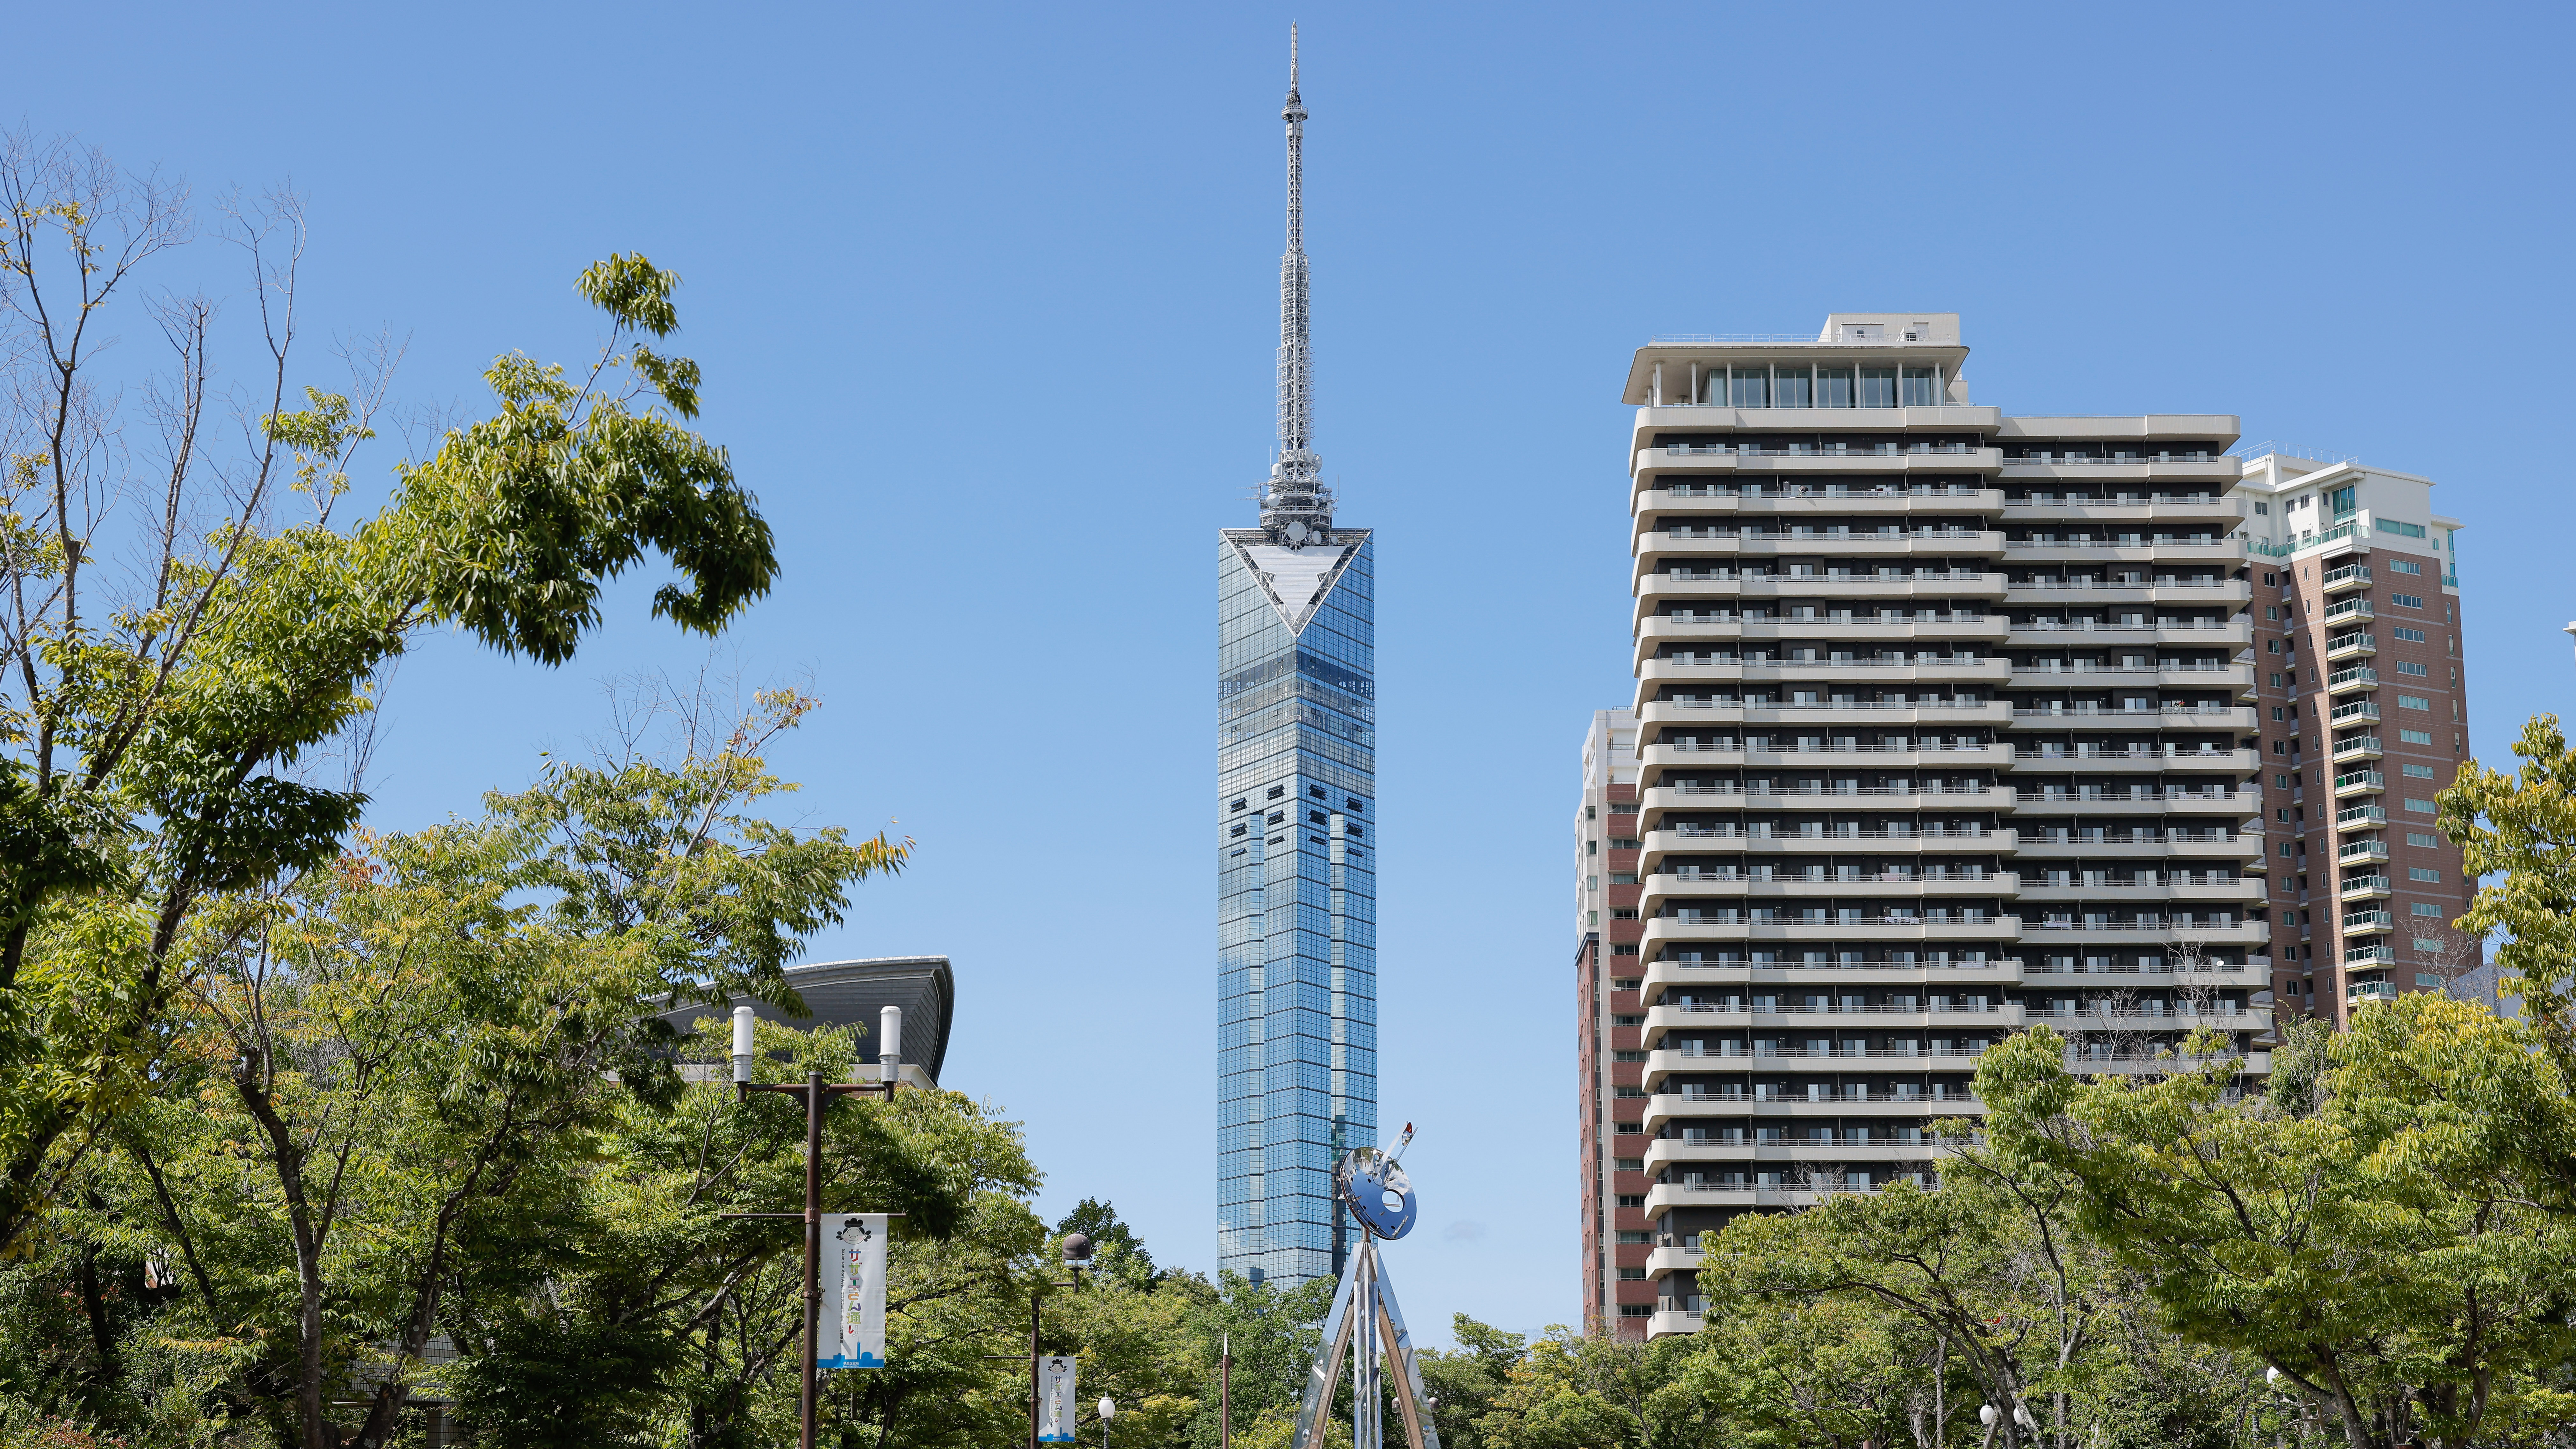 福岡タワー：全長234mの海浜タワー。展望からのパノラマは圧巻。天神からバスで25分